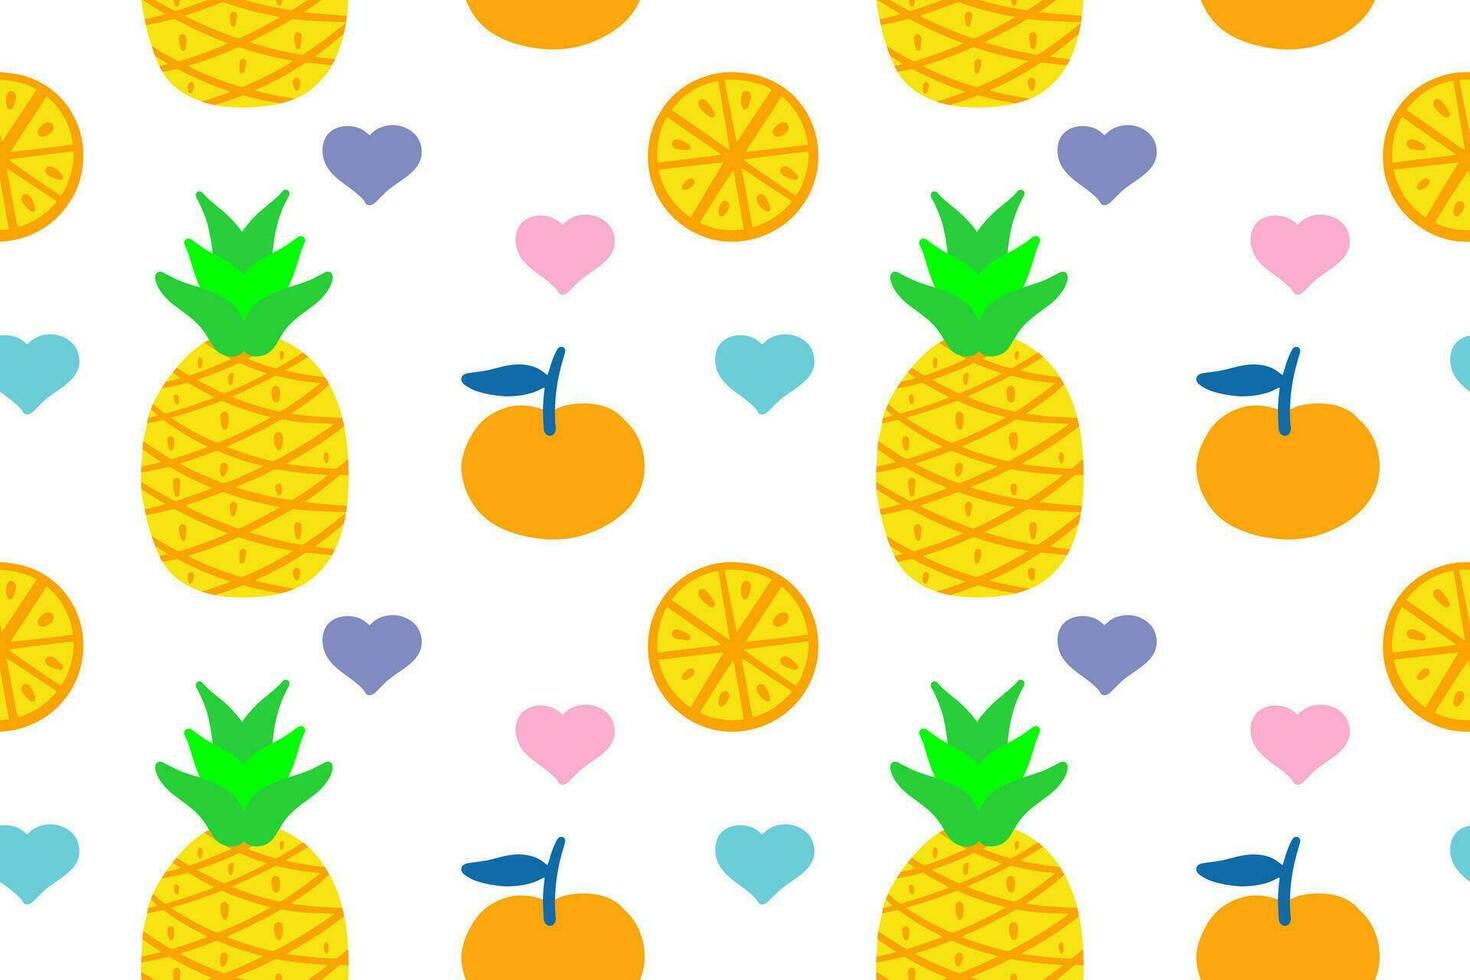 Ananas, Orange und Herz nahtlos Muster vektor